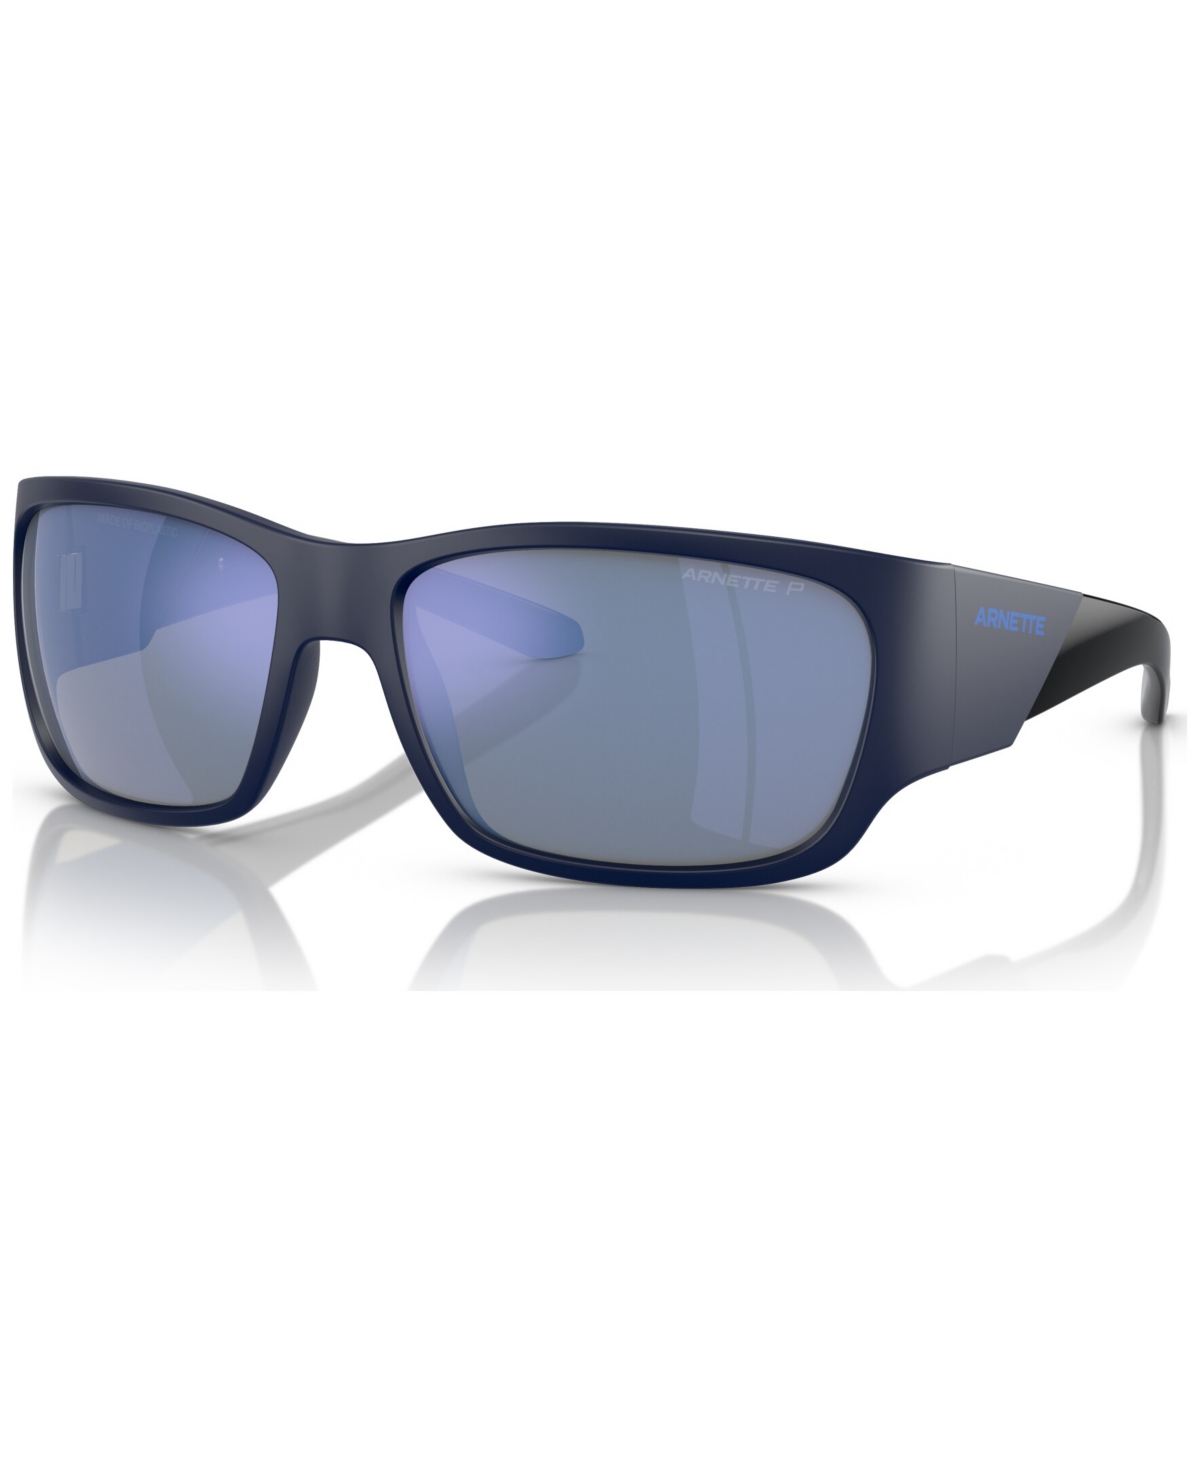 Arnette Men's Polarized Sunglasses, Lil' Snap